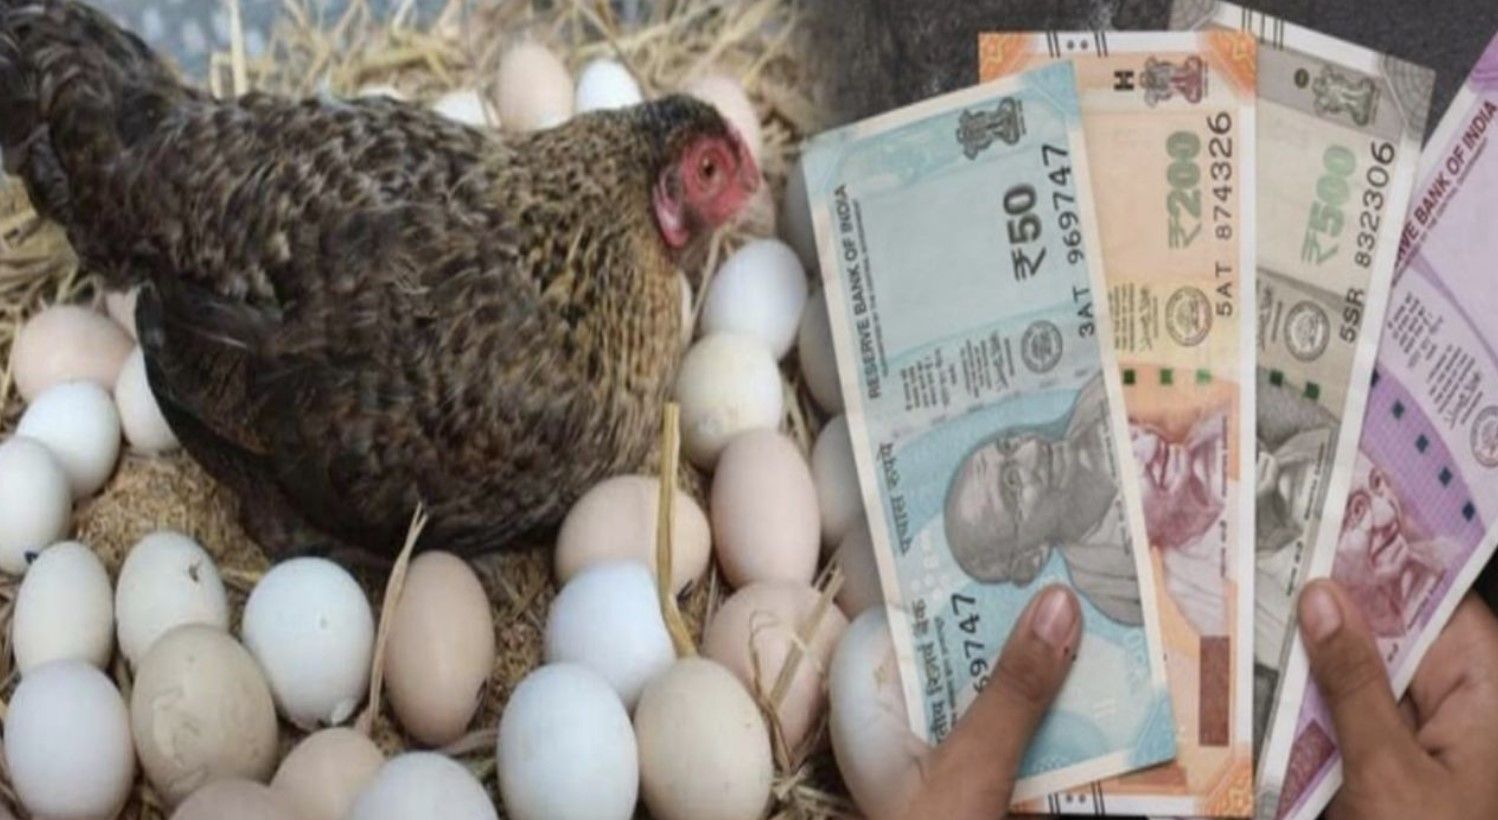 जान लीजिए अंडे से लाखों की कमाई का फंडा, लेयर मुर्गी पालन कर बनें सफल व्यापारी